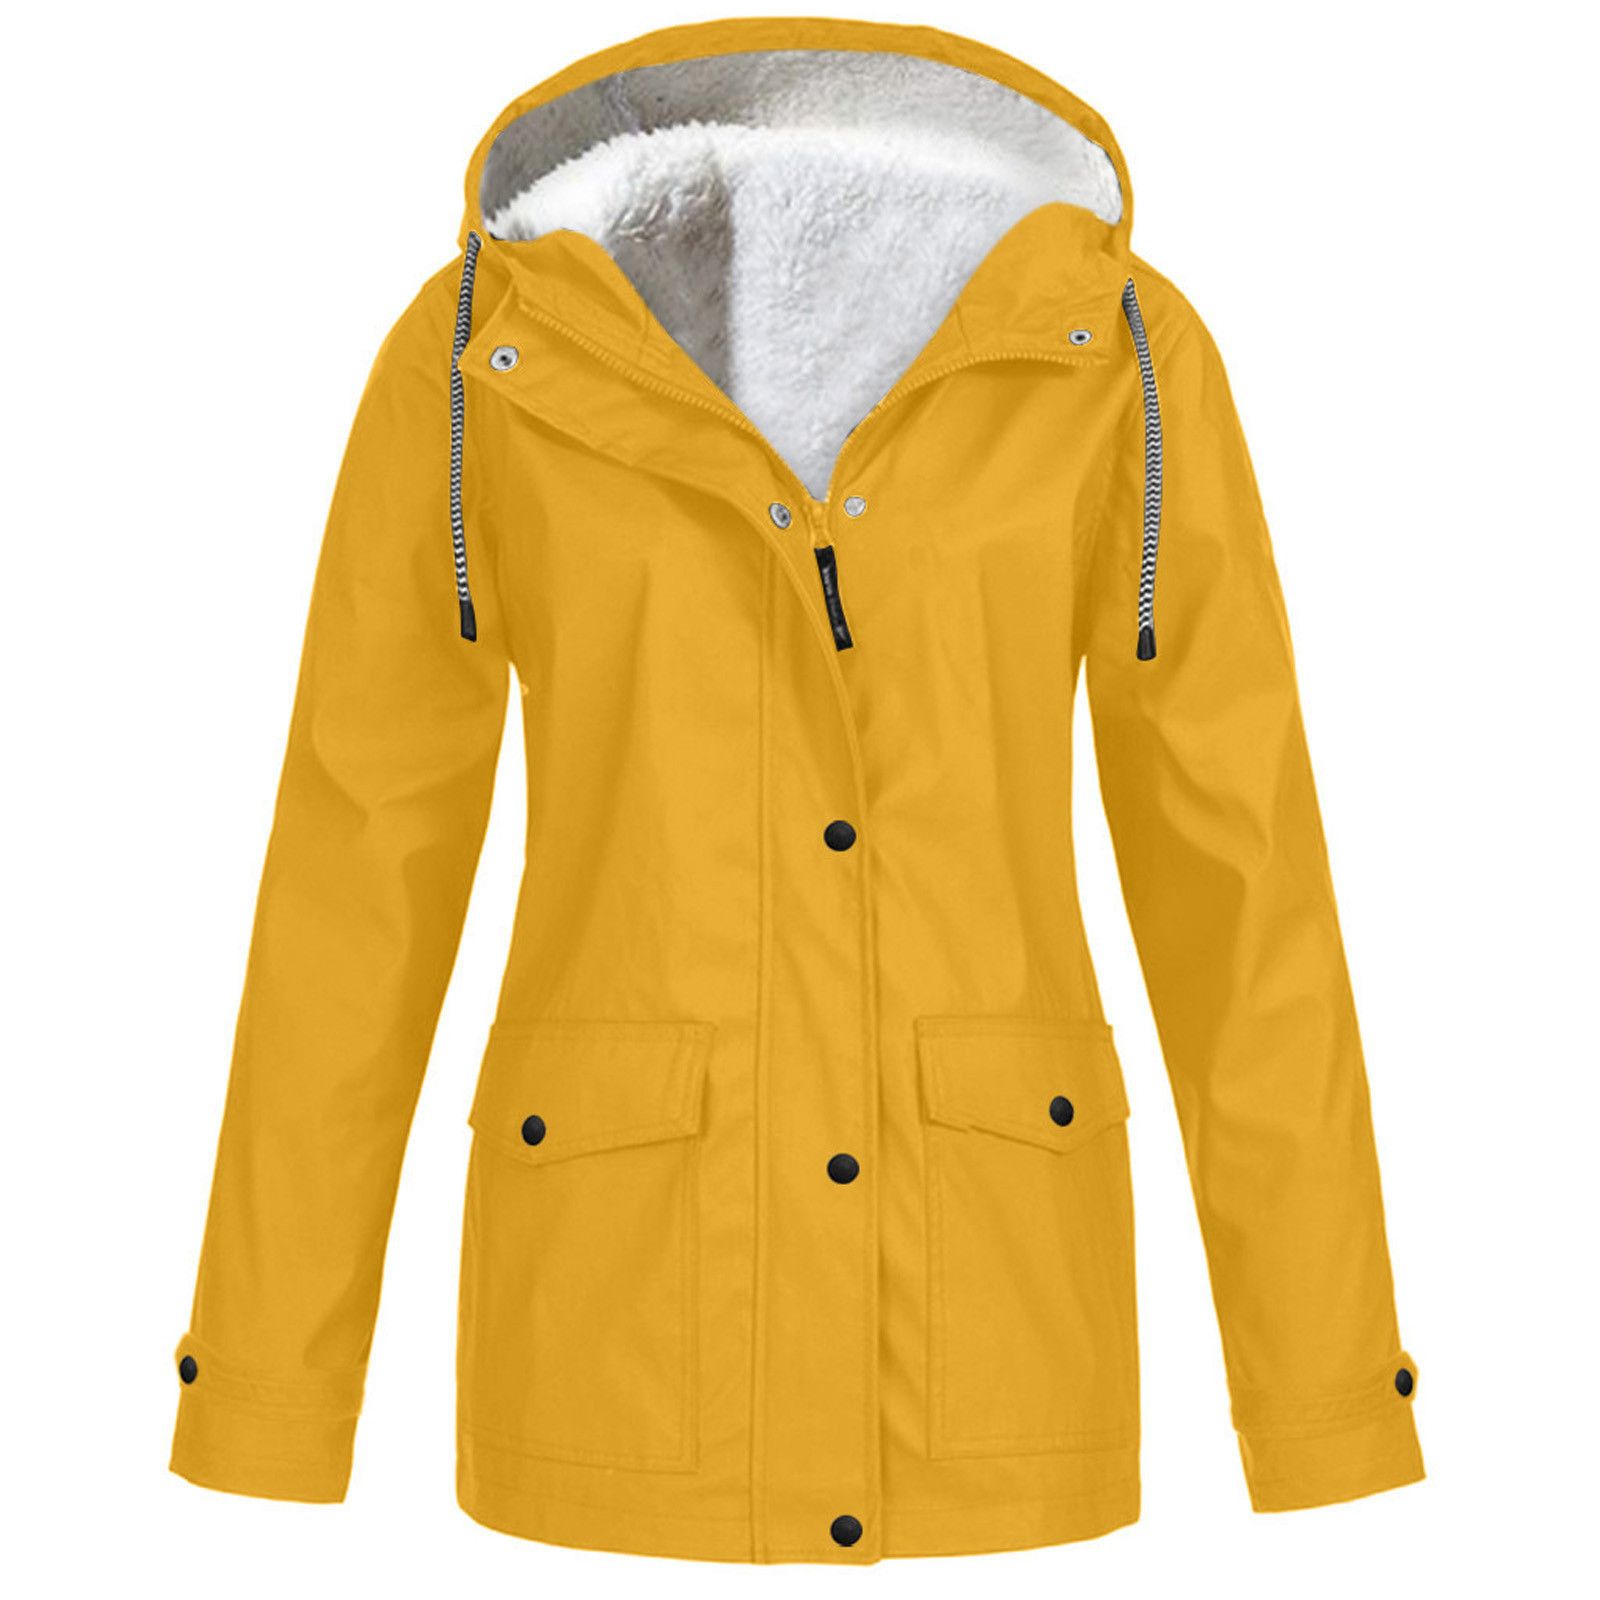 Легкие куртки с капюшоном женские. Biba женская ветровка с капюшоном. Voile bleue одежда куртка детская. Желтая ветровка женская. Желтая куртка женская.